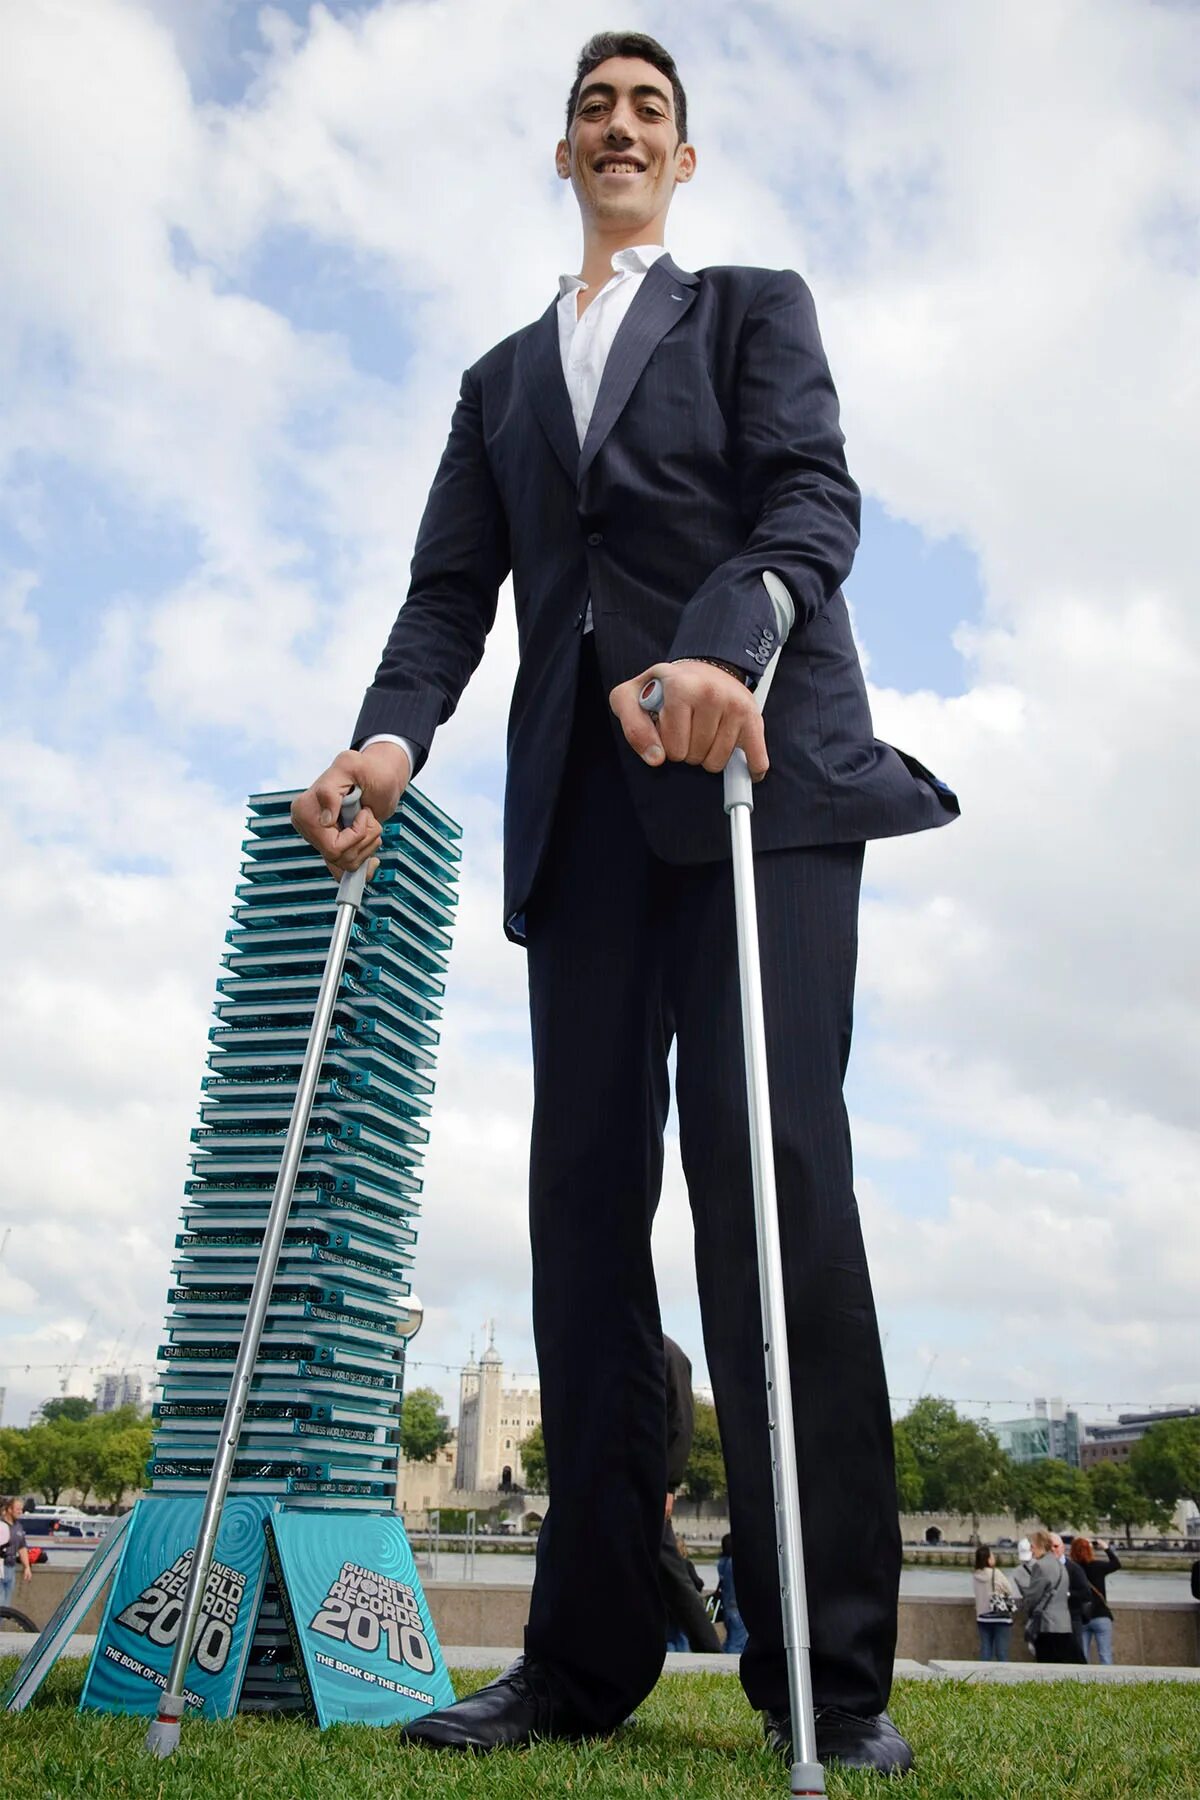 Почему самая высокая. Султан кёсен самый высокий. Султан кёсен самый высокий человек рост. Самый высокий человек турок Султан кёсен. Самый высокий человек в мире рост 2021.